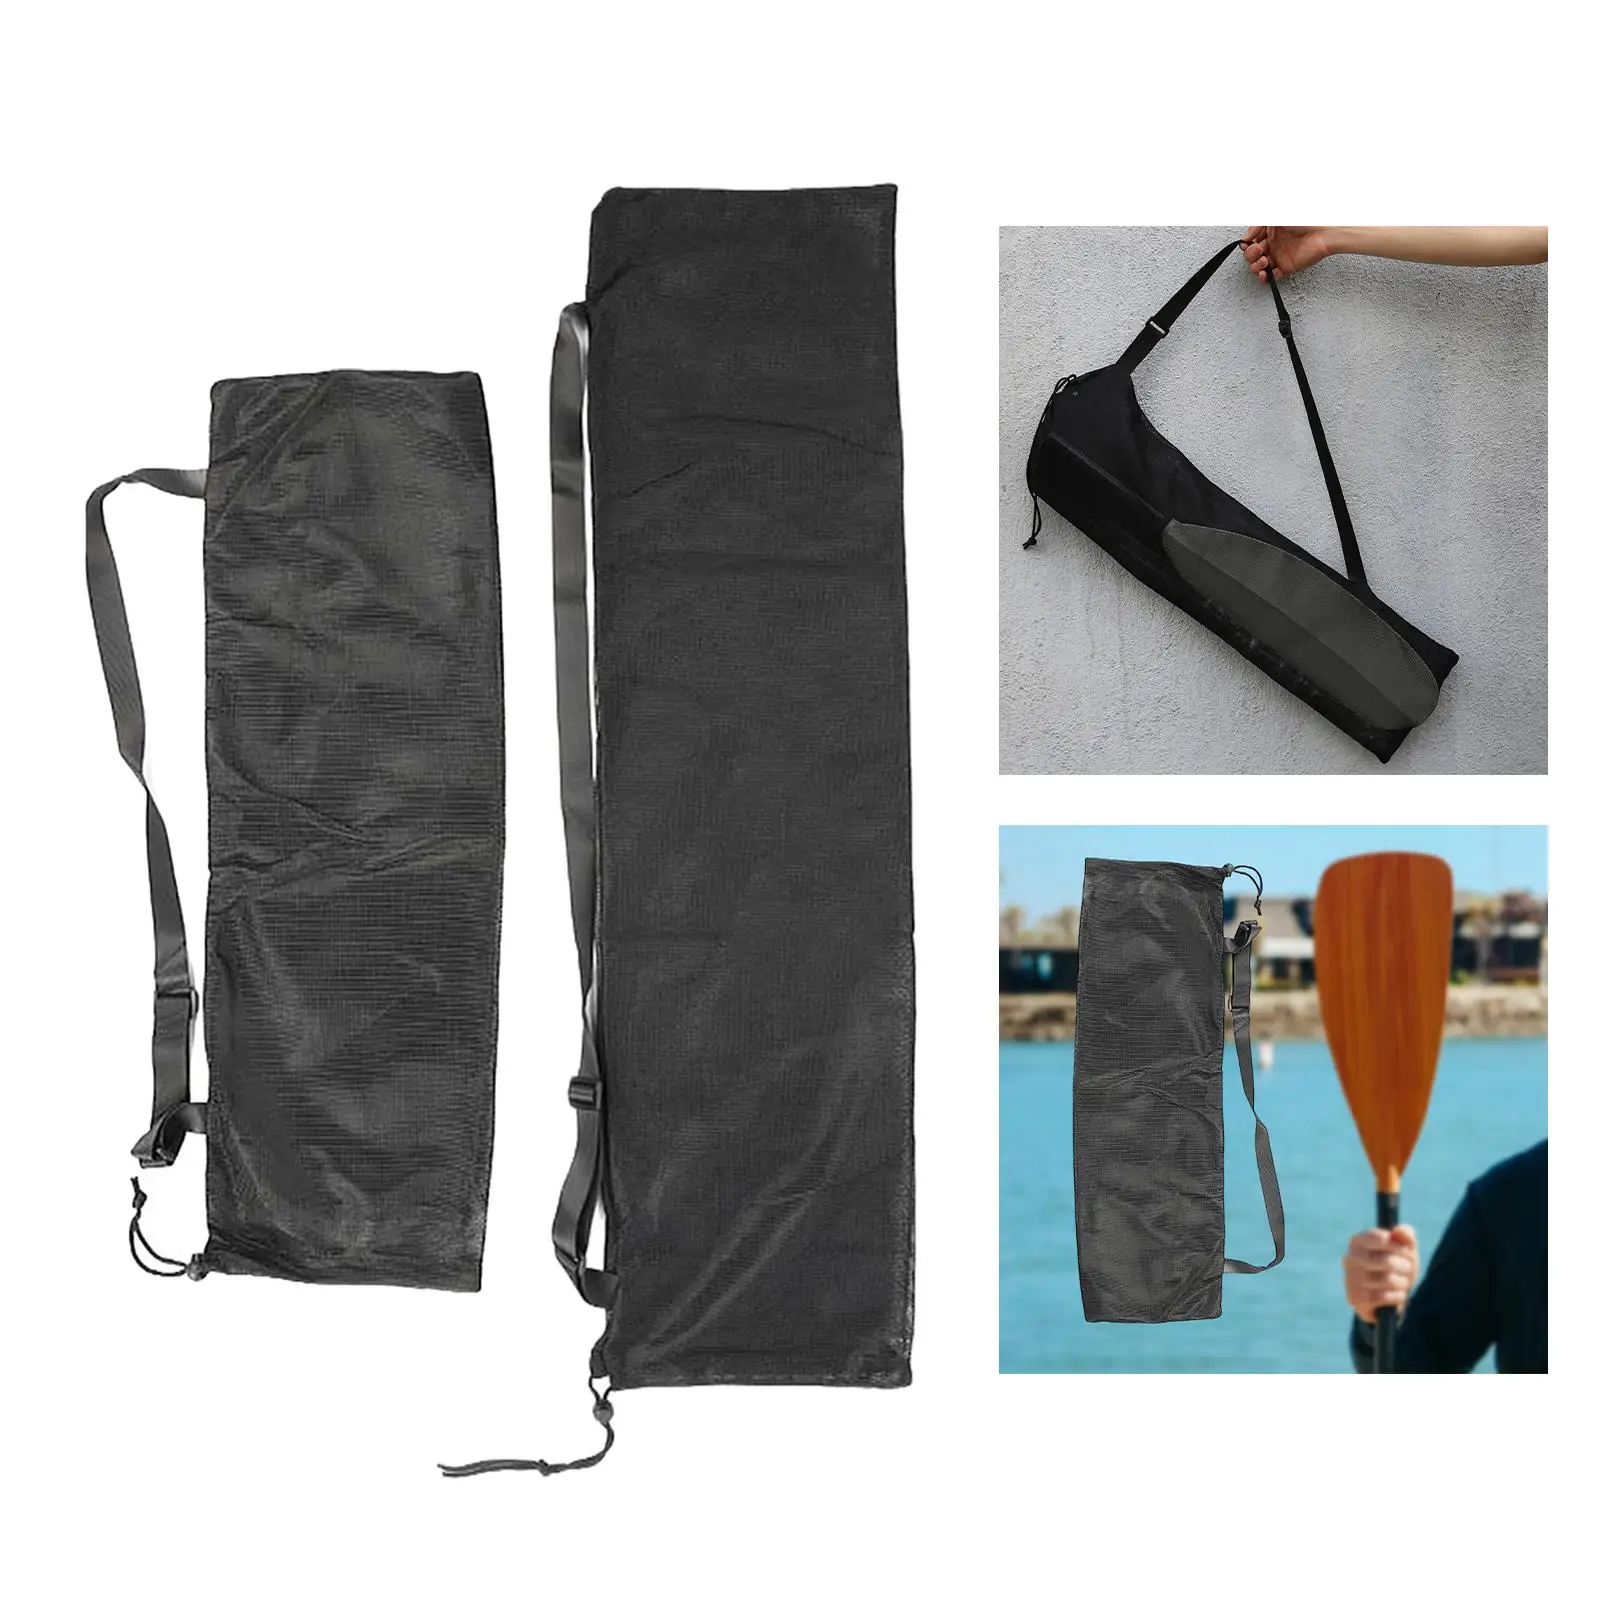 Paddle Bag for Kayak, Canoe,  Paddle, Split Paddle Storage Bag,  Mesh Bag with Shoulder Strap